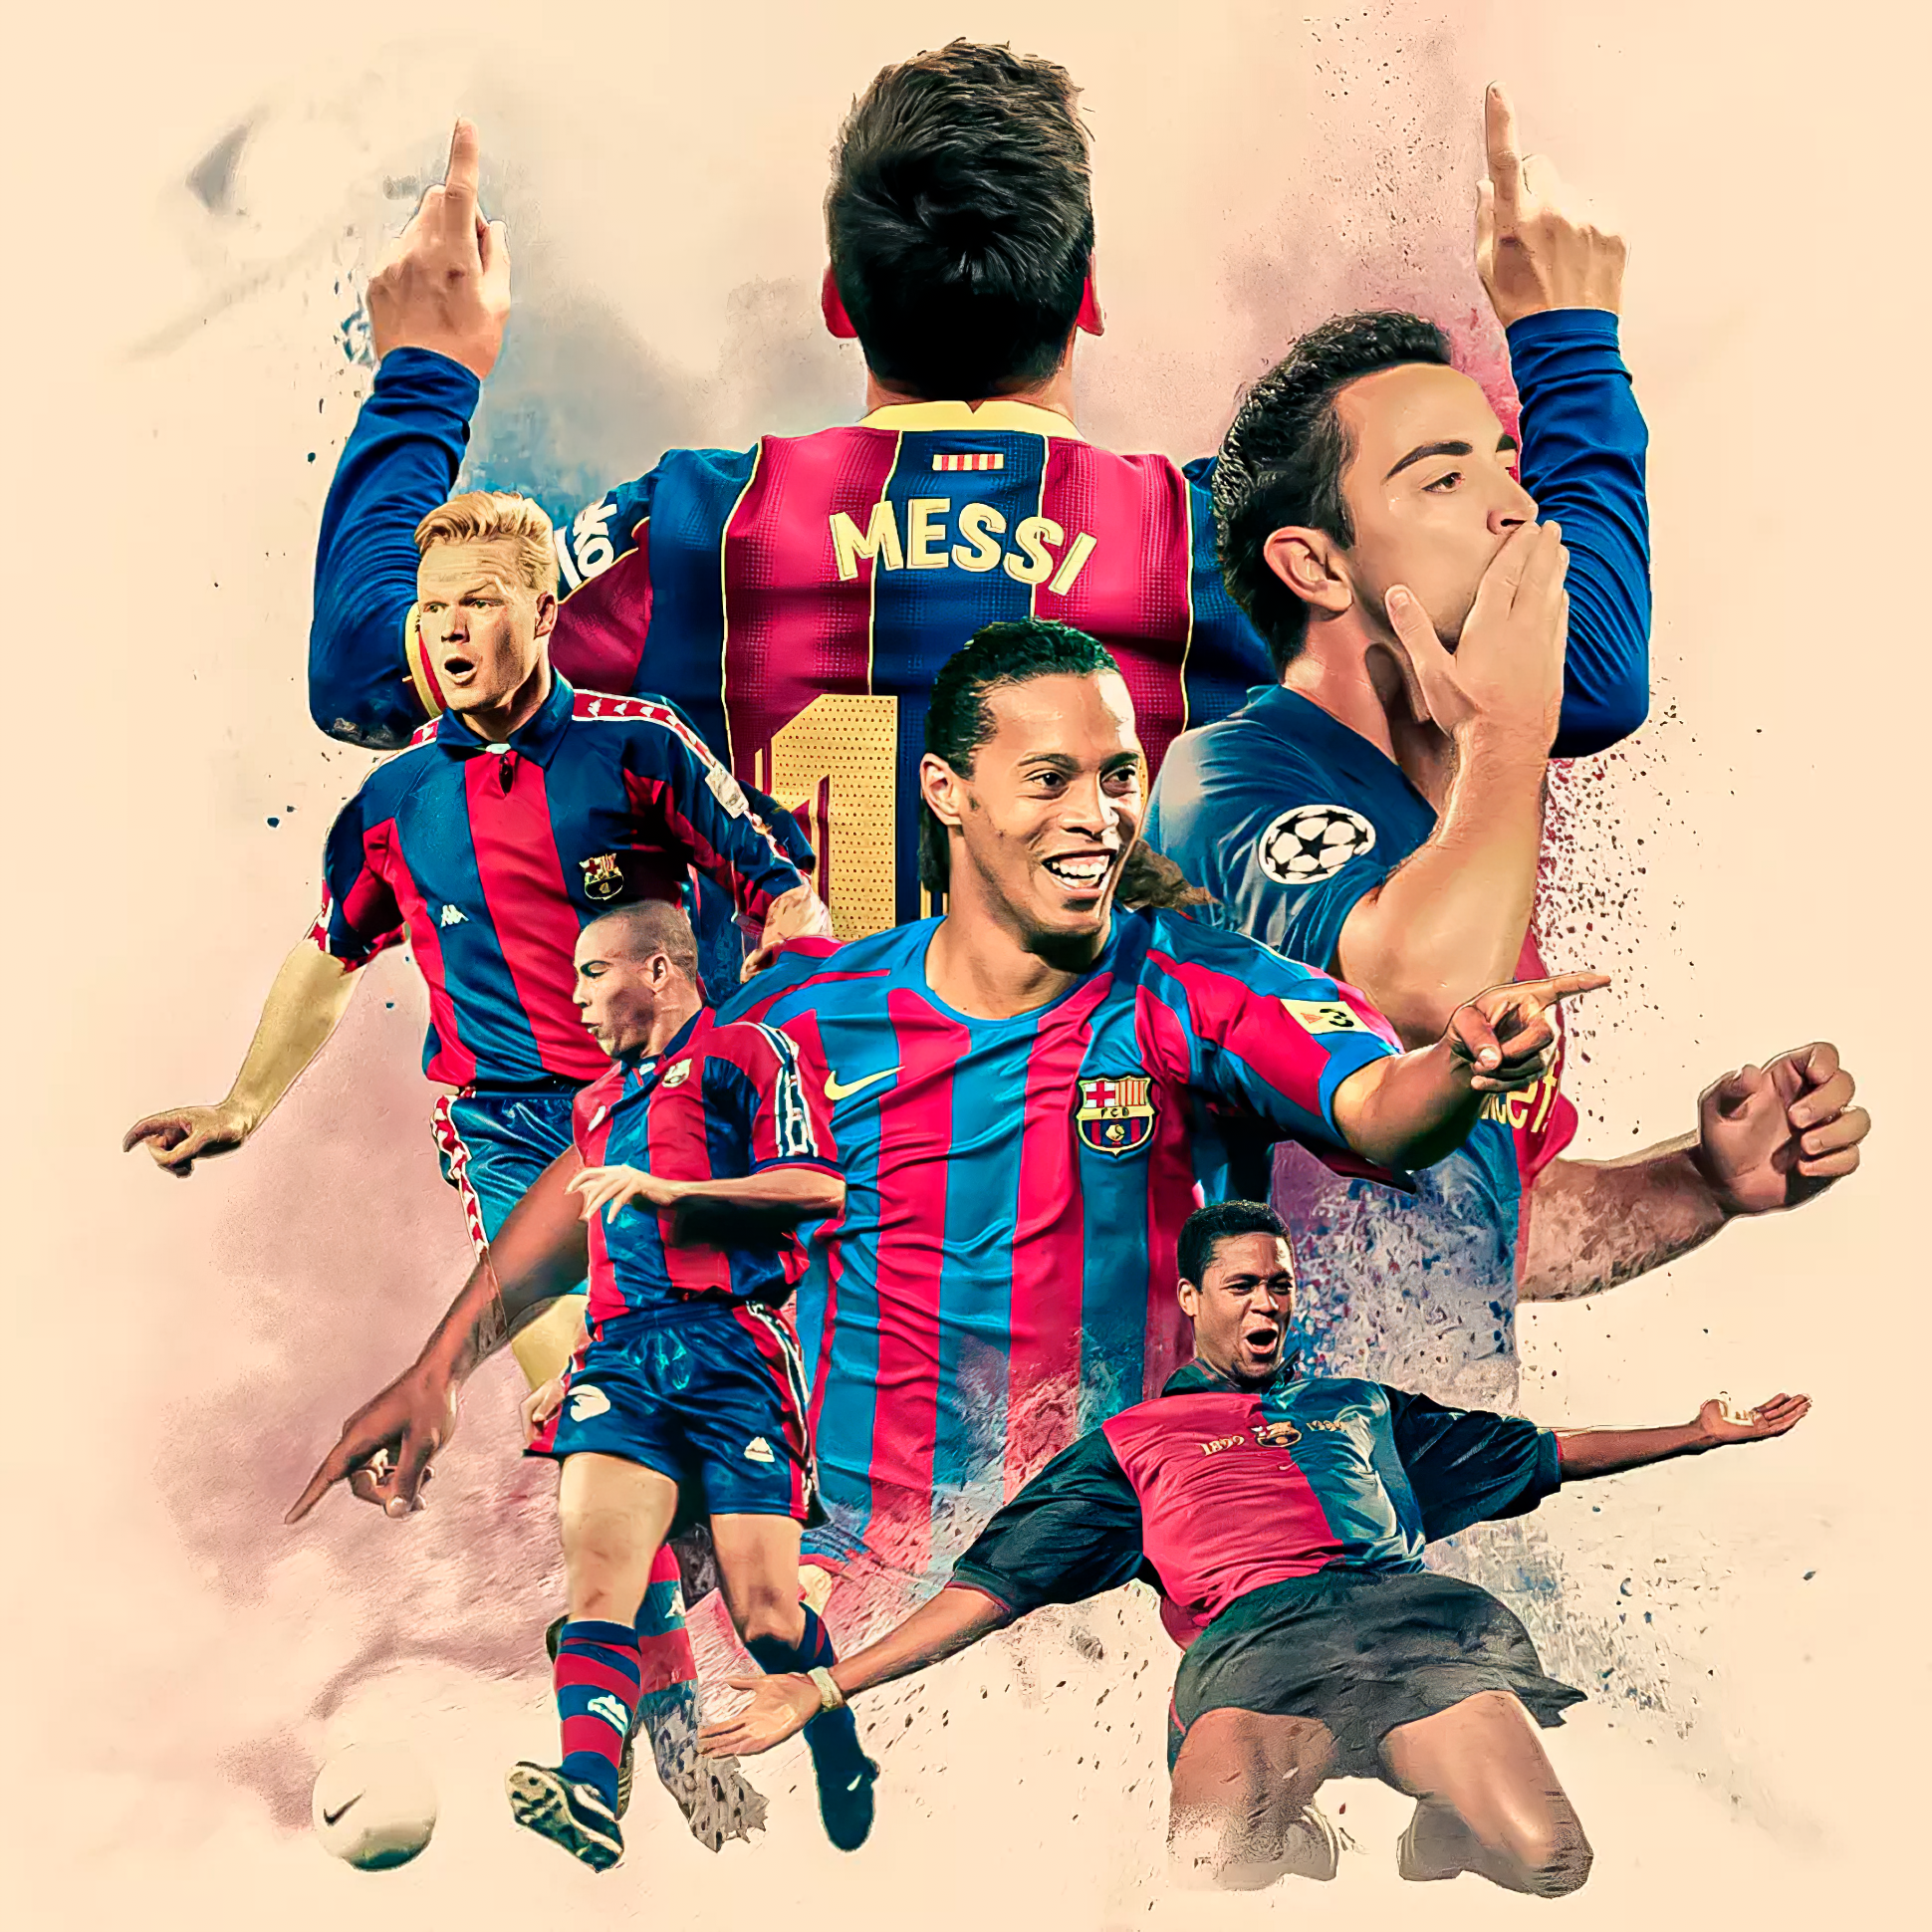 Os dez maiores jogadores do Barcelona no século